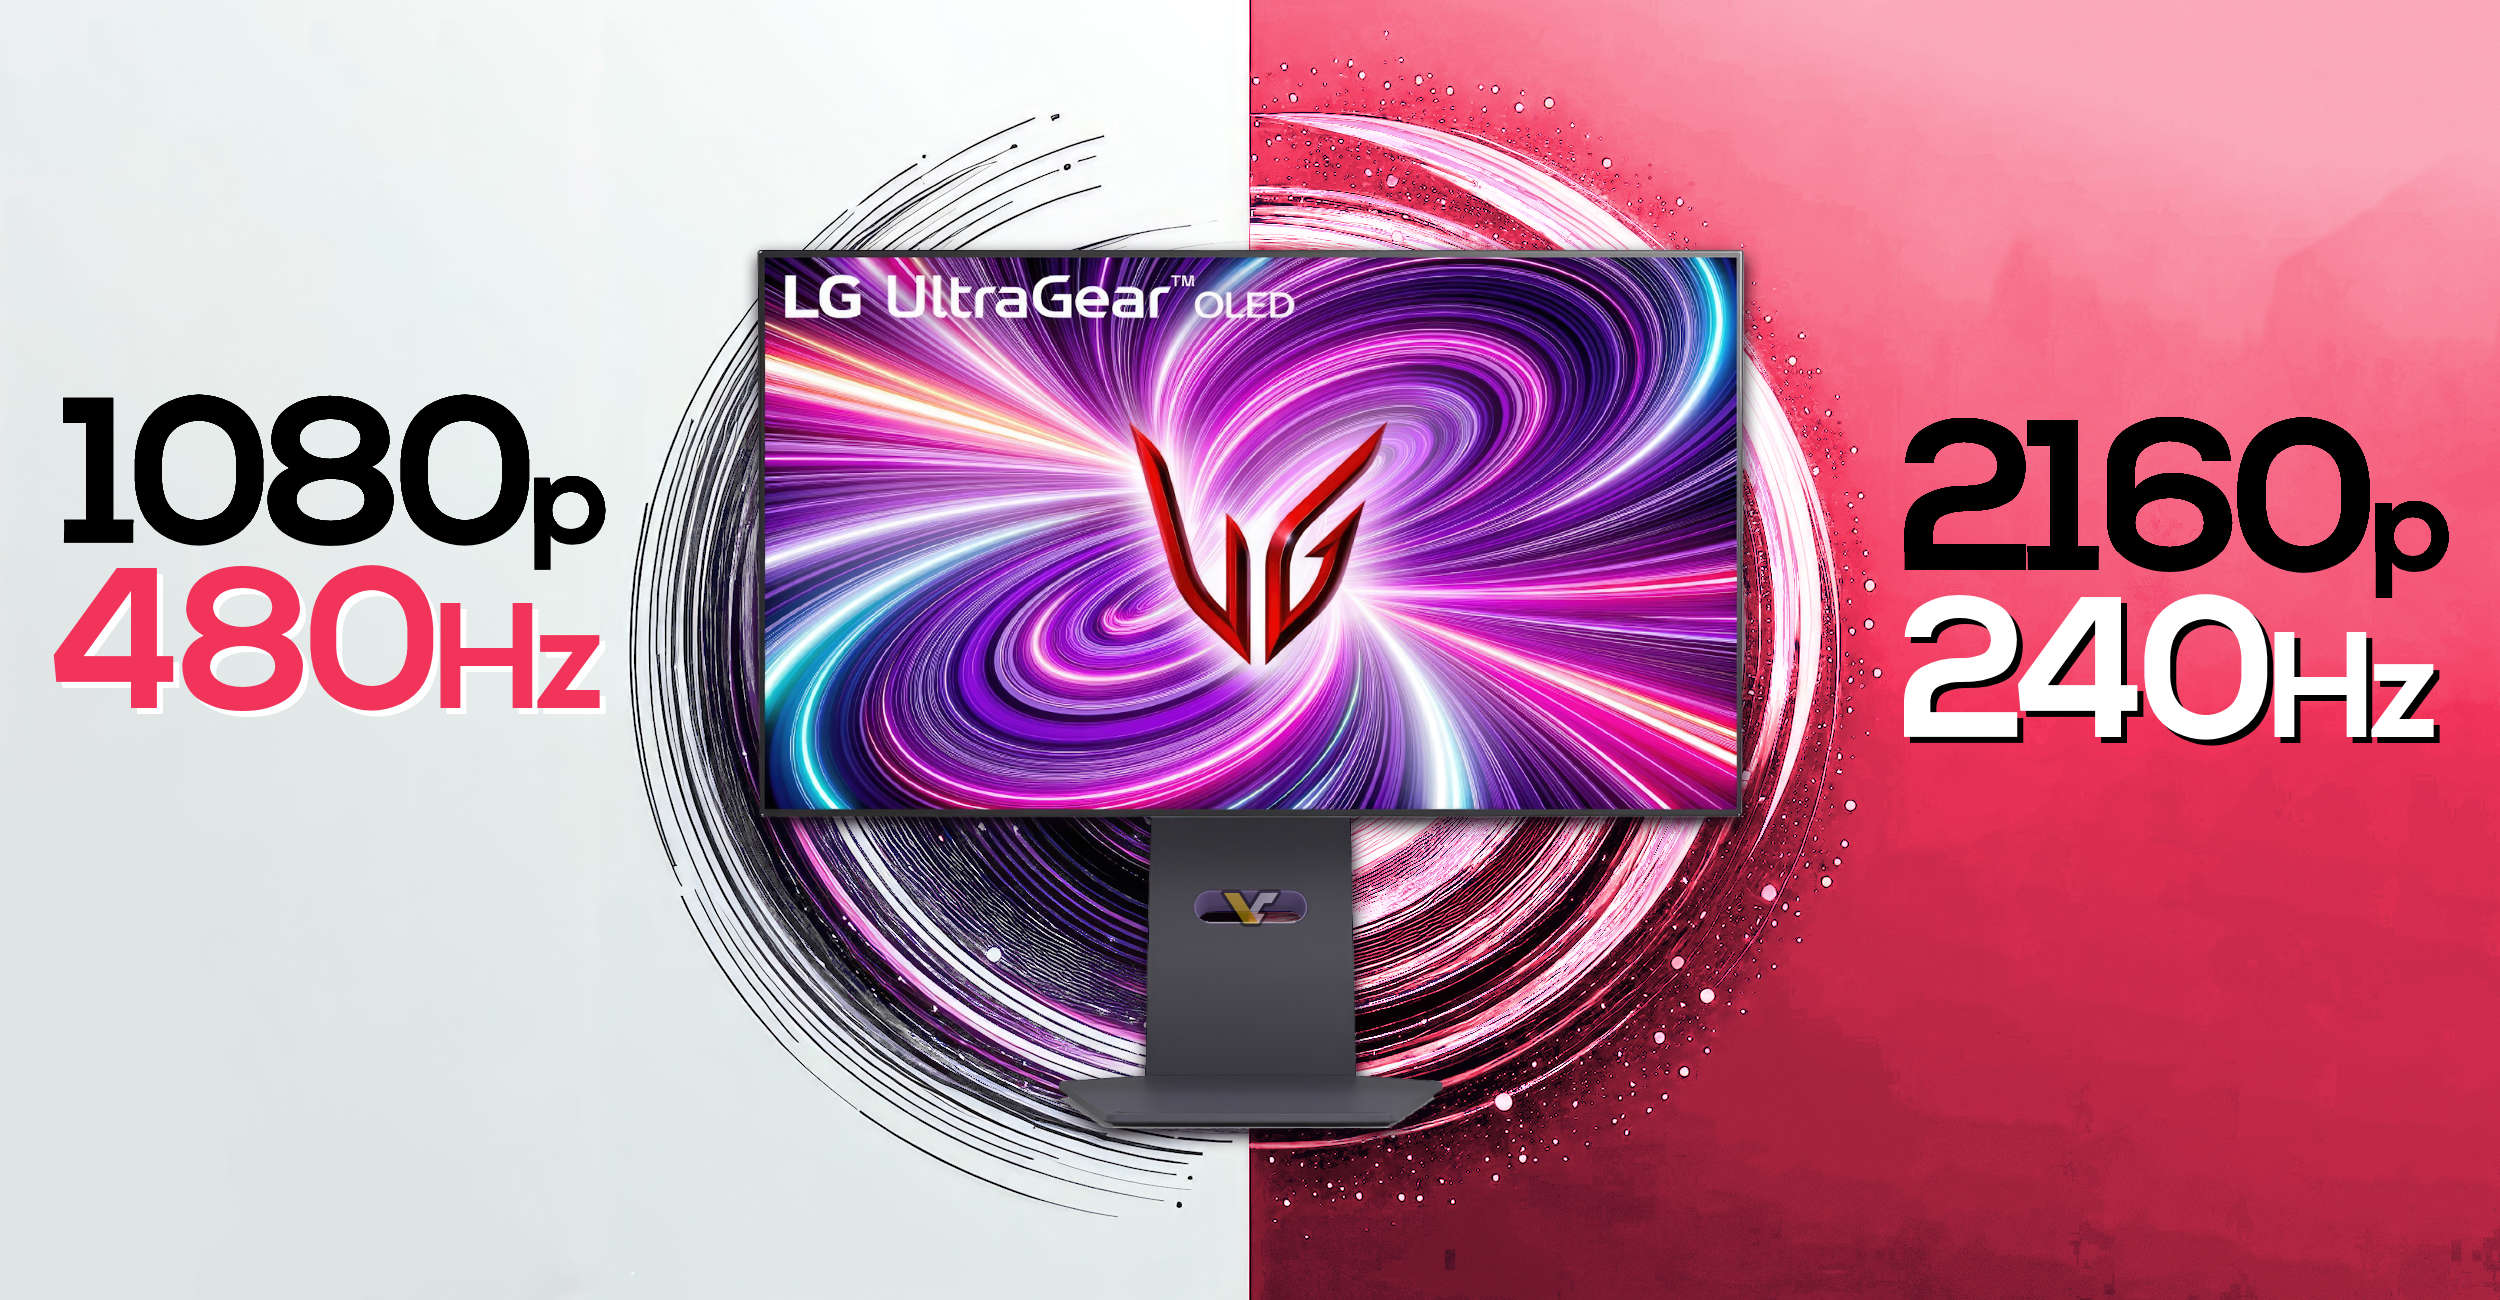 LG、「デュアル Hz」: 1080p/480Hz および 4K/240Hz モードを備えた 32 インチ 4K OLED ディスプレイを発表